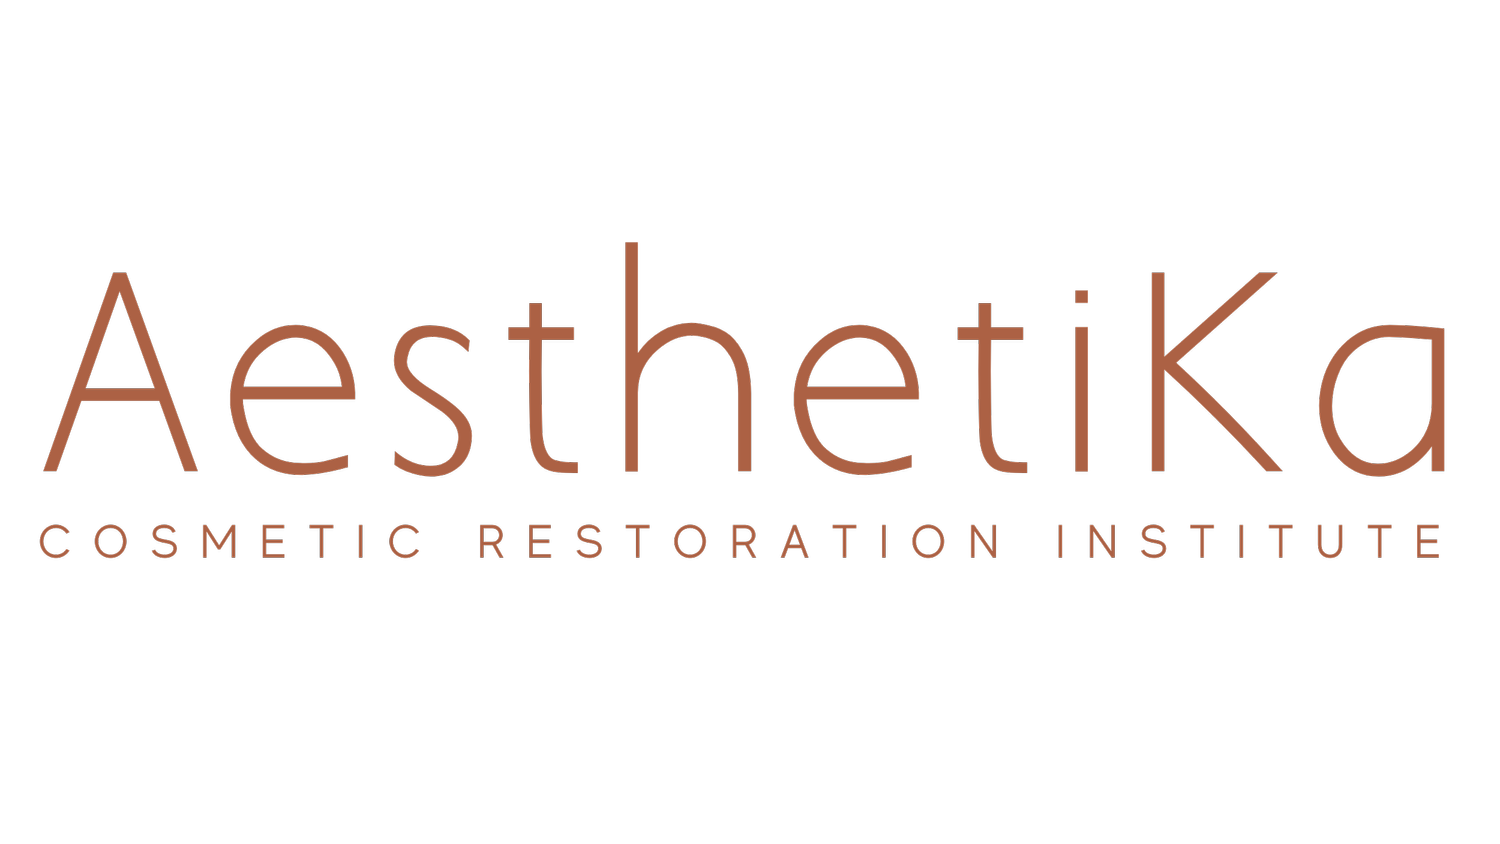 AesthetiKa Cosmetic Restoration Institute